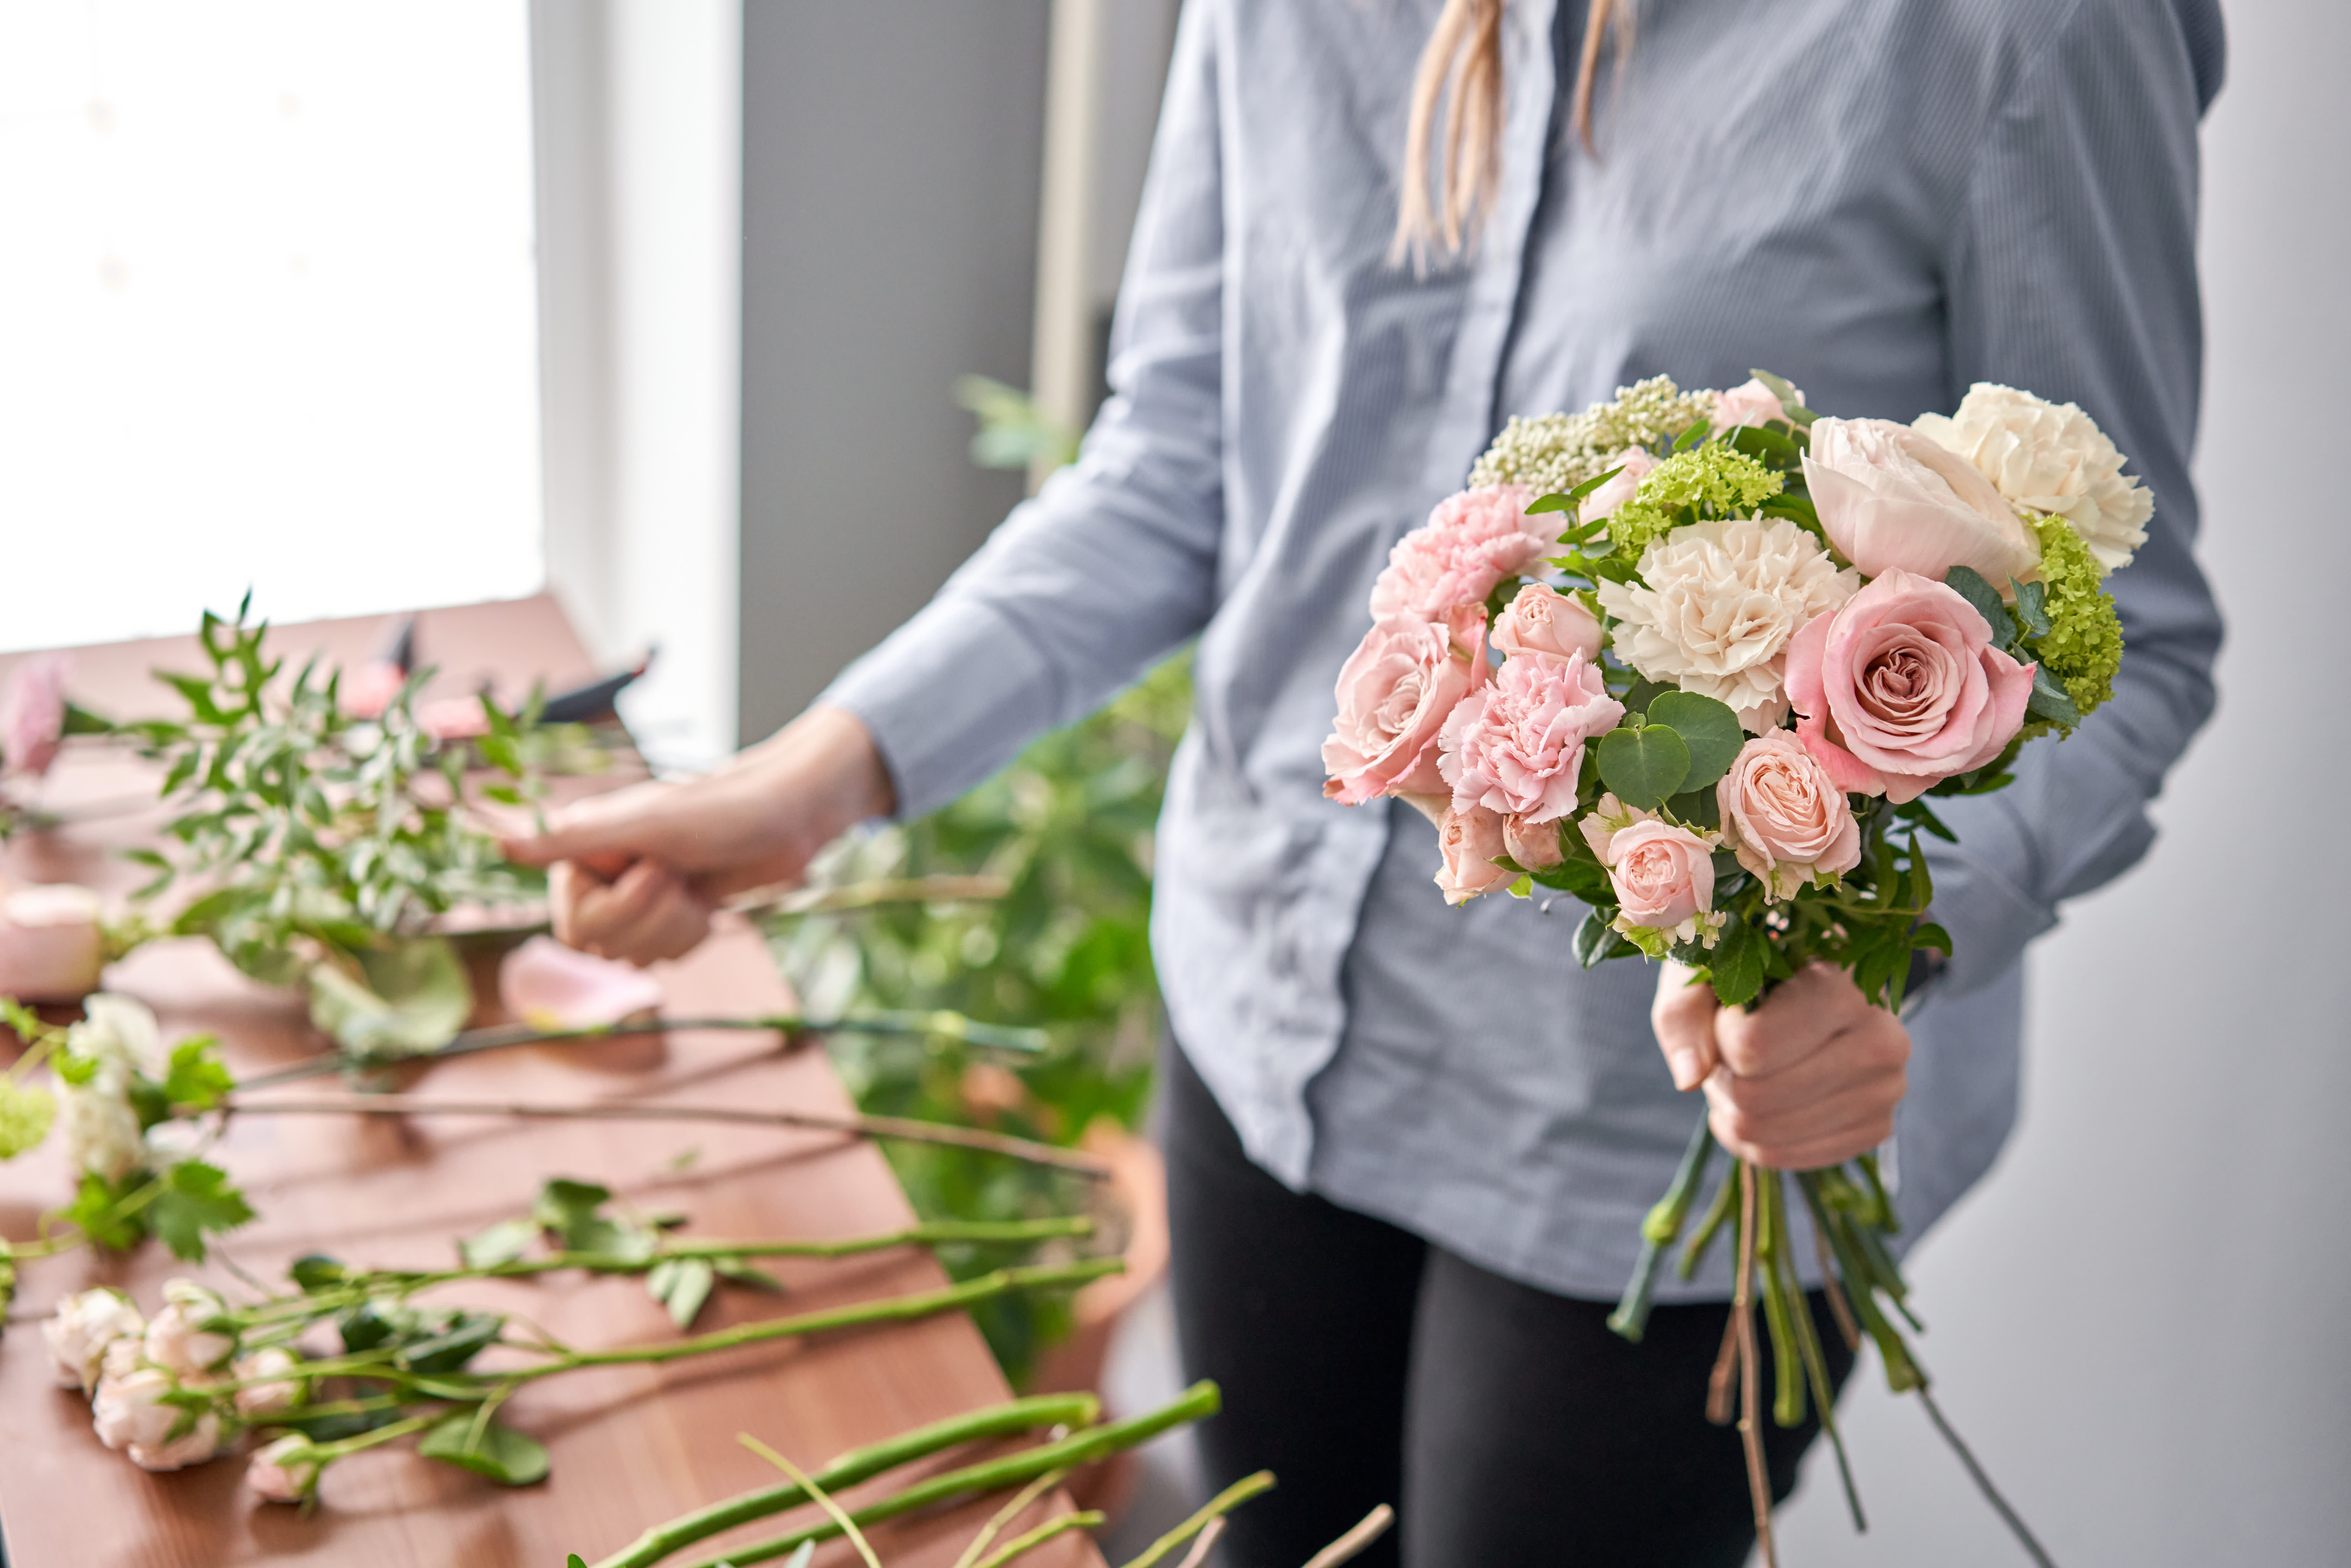 How to Arrange Flowers Like a Florist